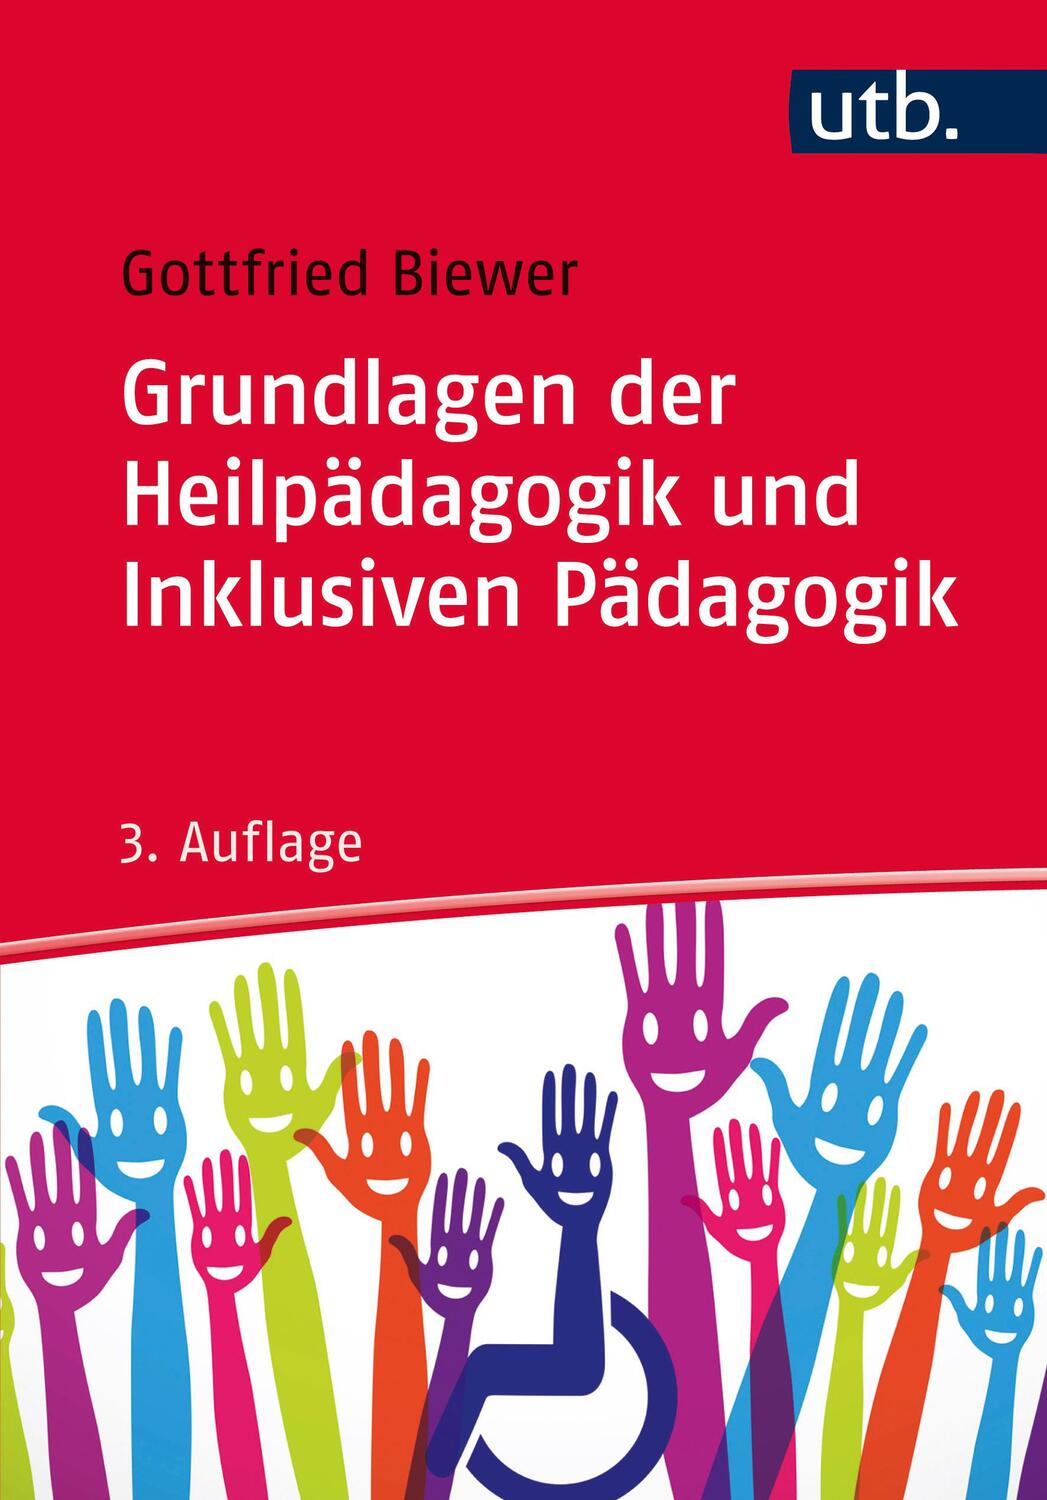 Grundlagen der Heilpädagogik und Inklusiven Pädagogik - Biewer, Gottfried